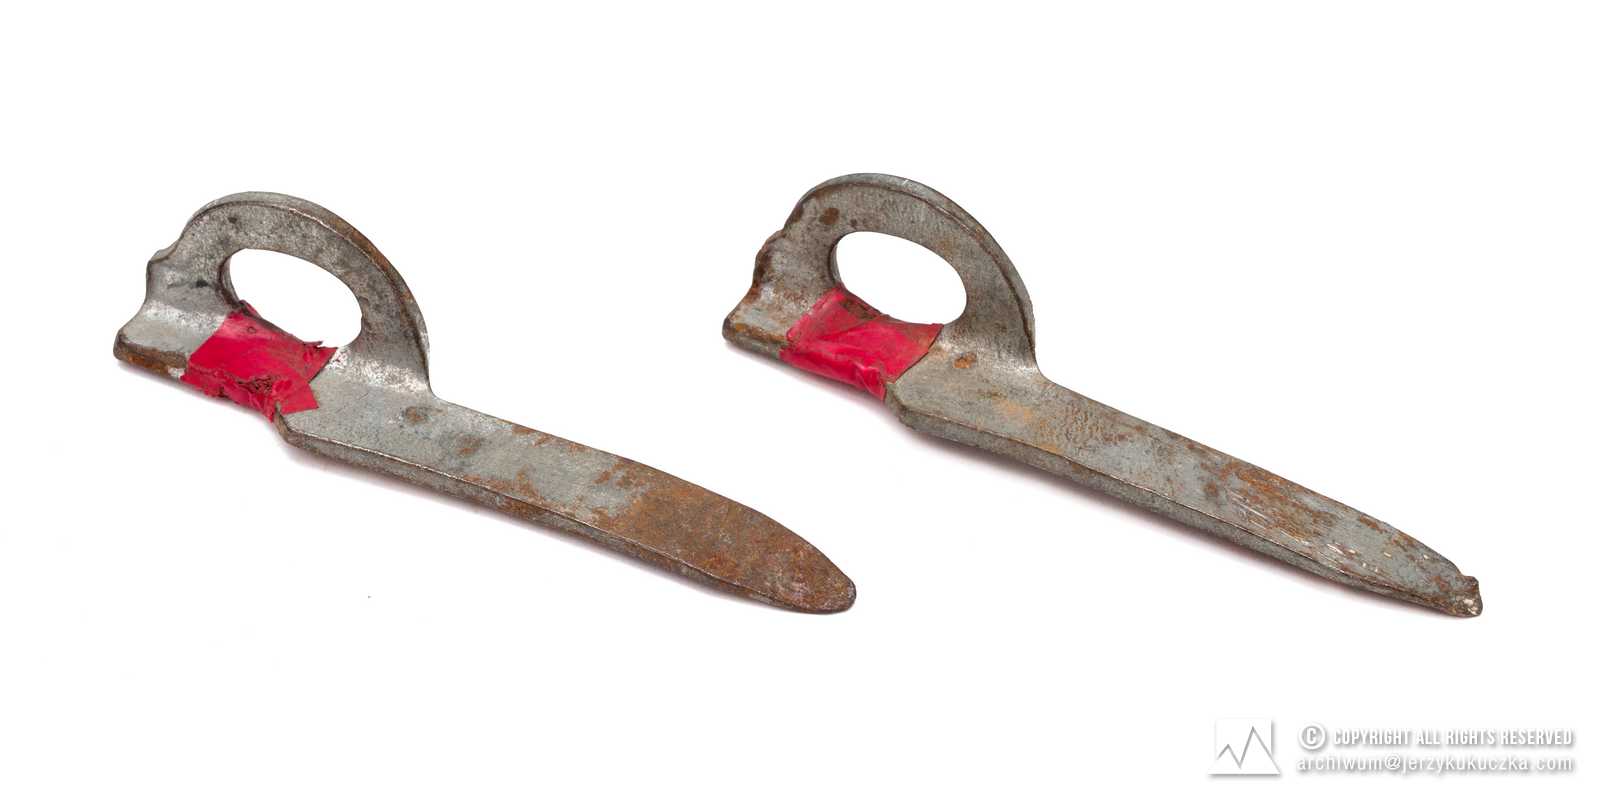 hak typu knifeblade, łyżka niesygnowany, oznaczony czerwoną taśmą, długość: 128 mm.Lata 60-80. XX w.